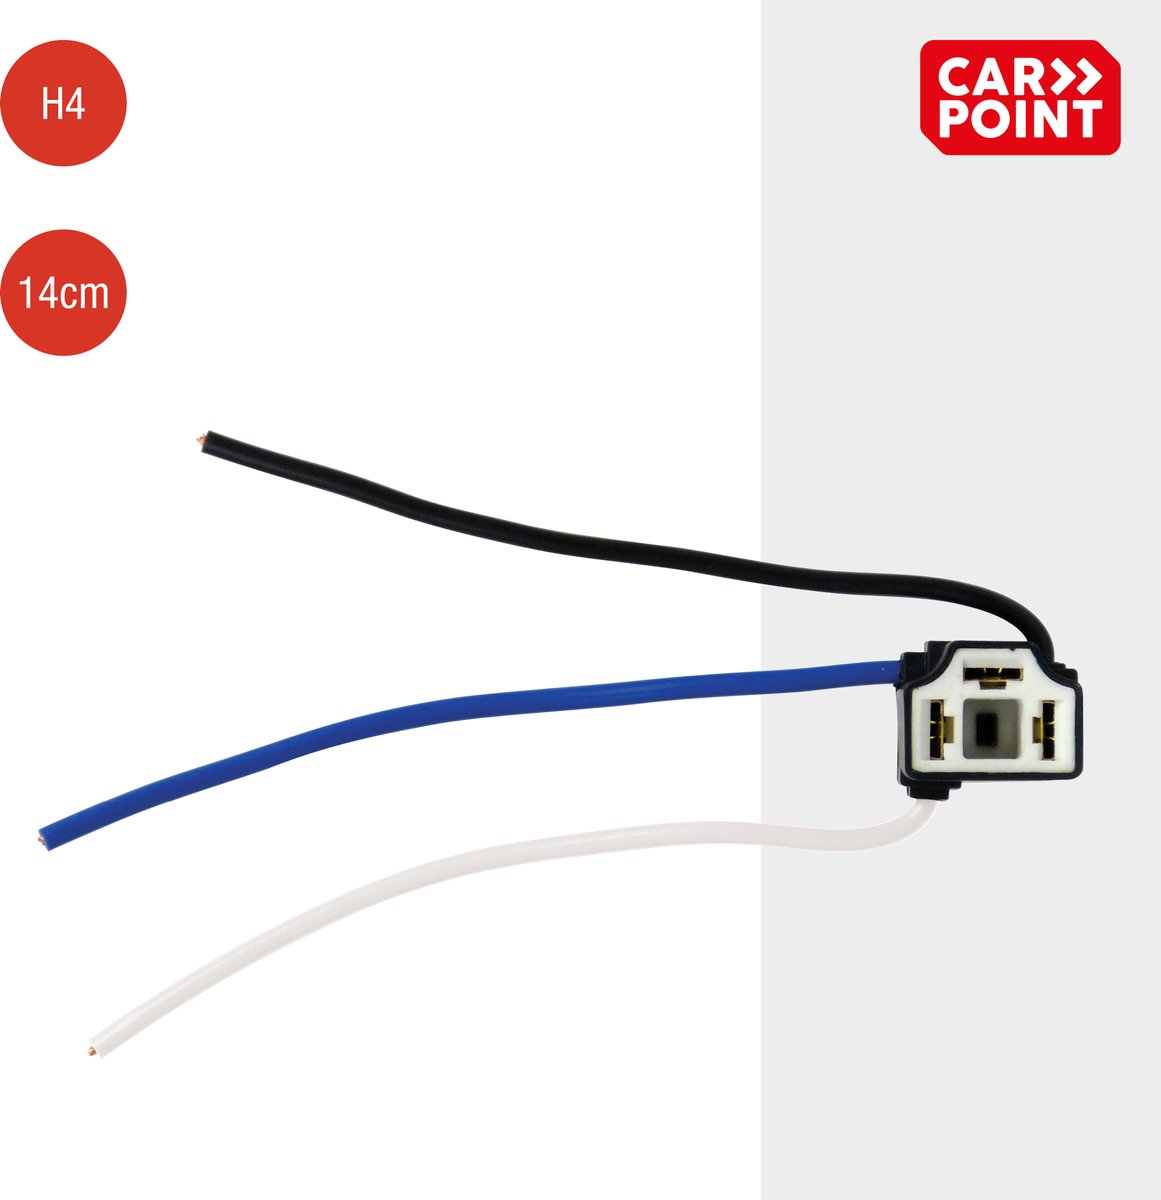 Carpoint H4 Stekker, Keramische Vervangingsstekker voor H4 Autolampen